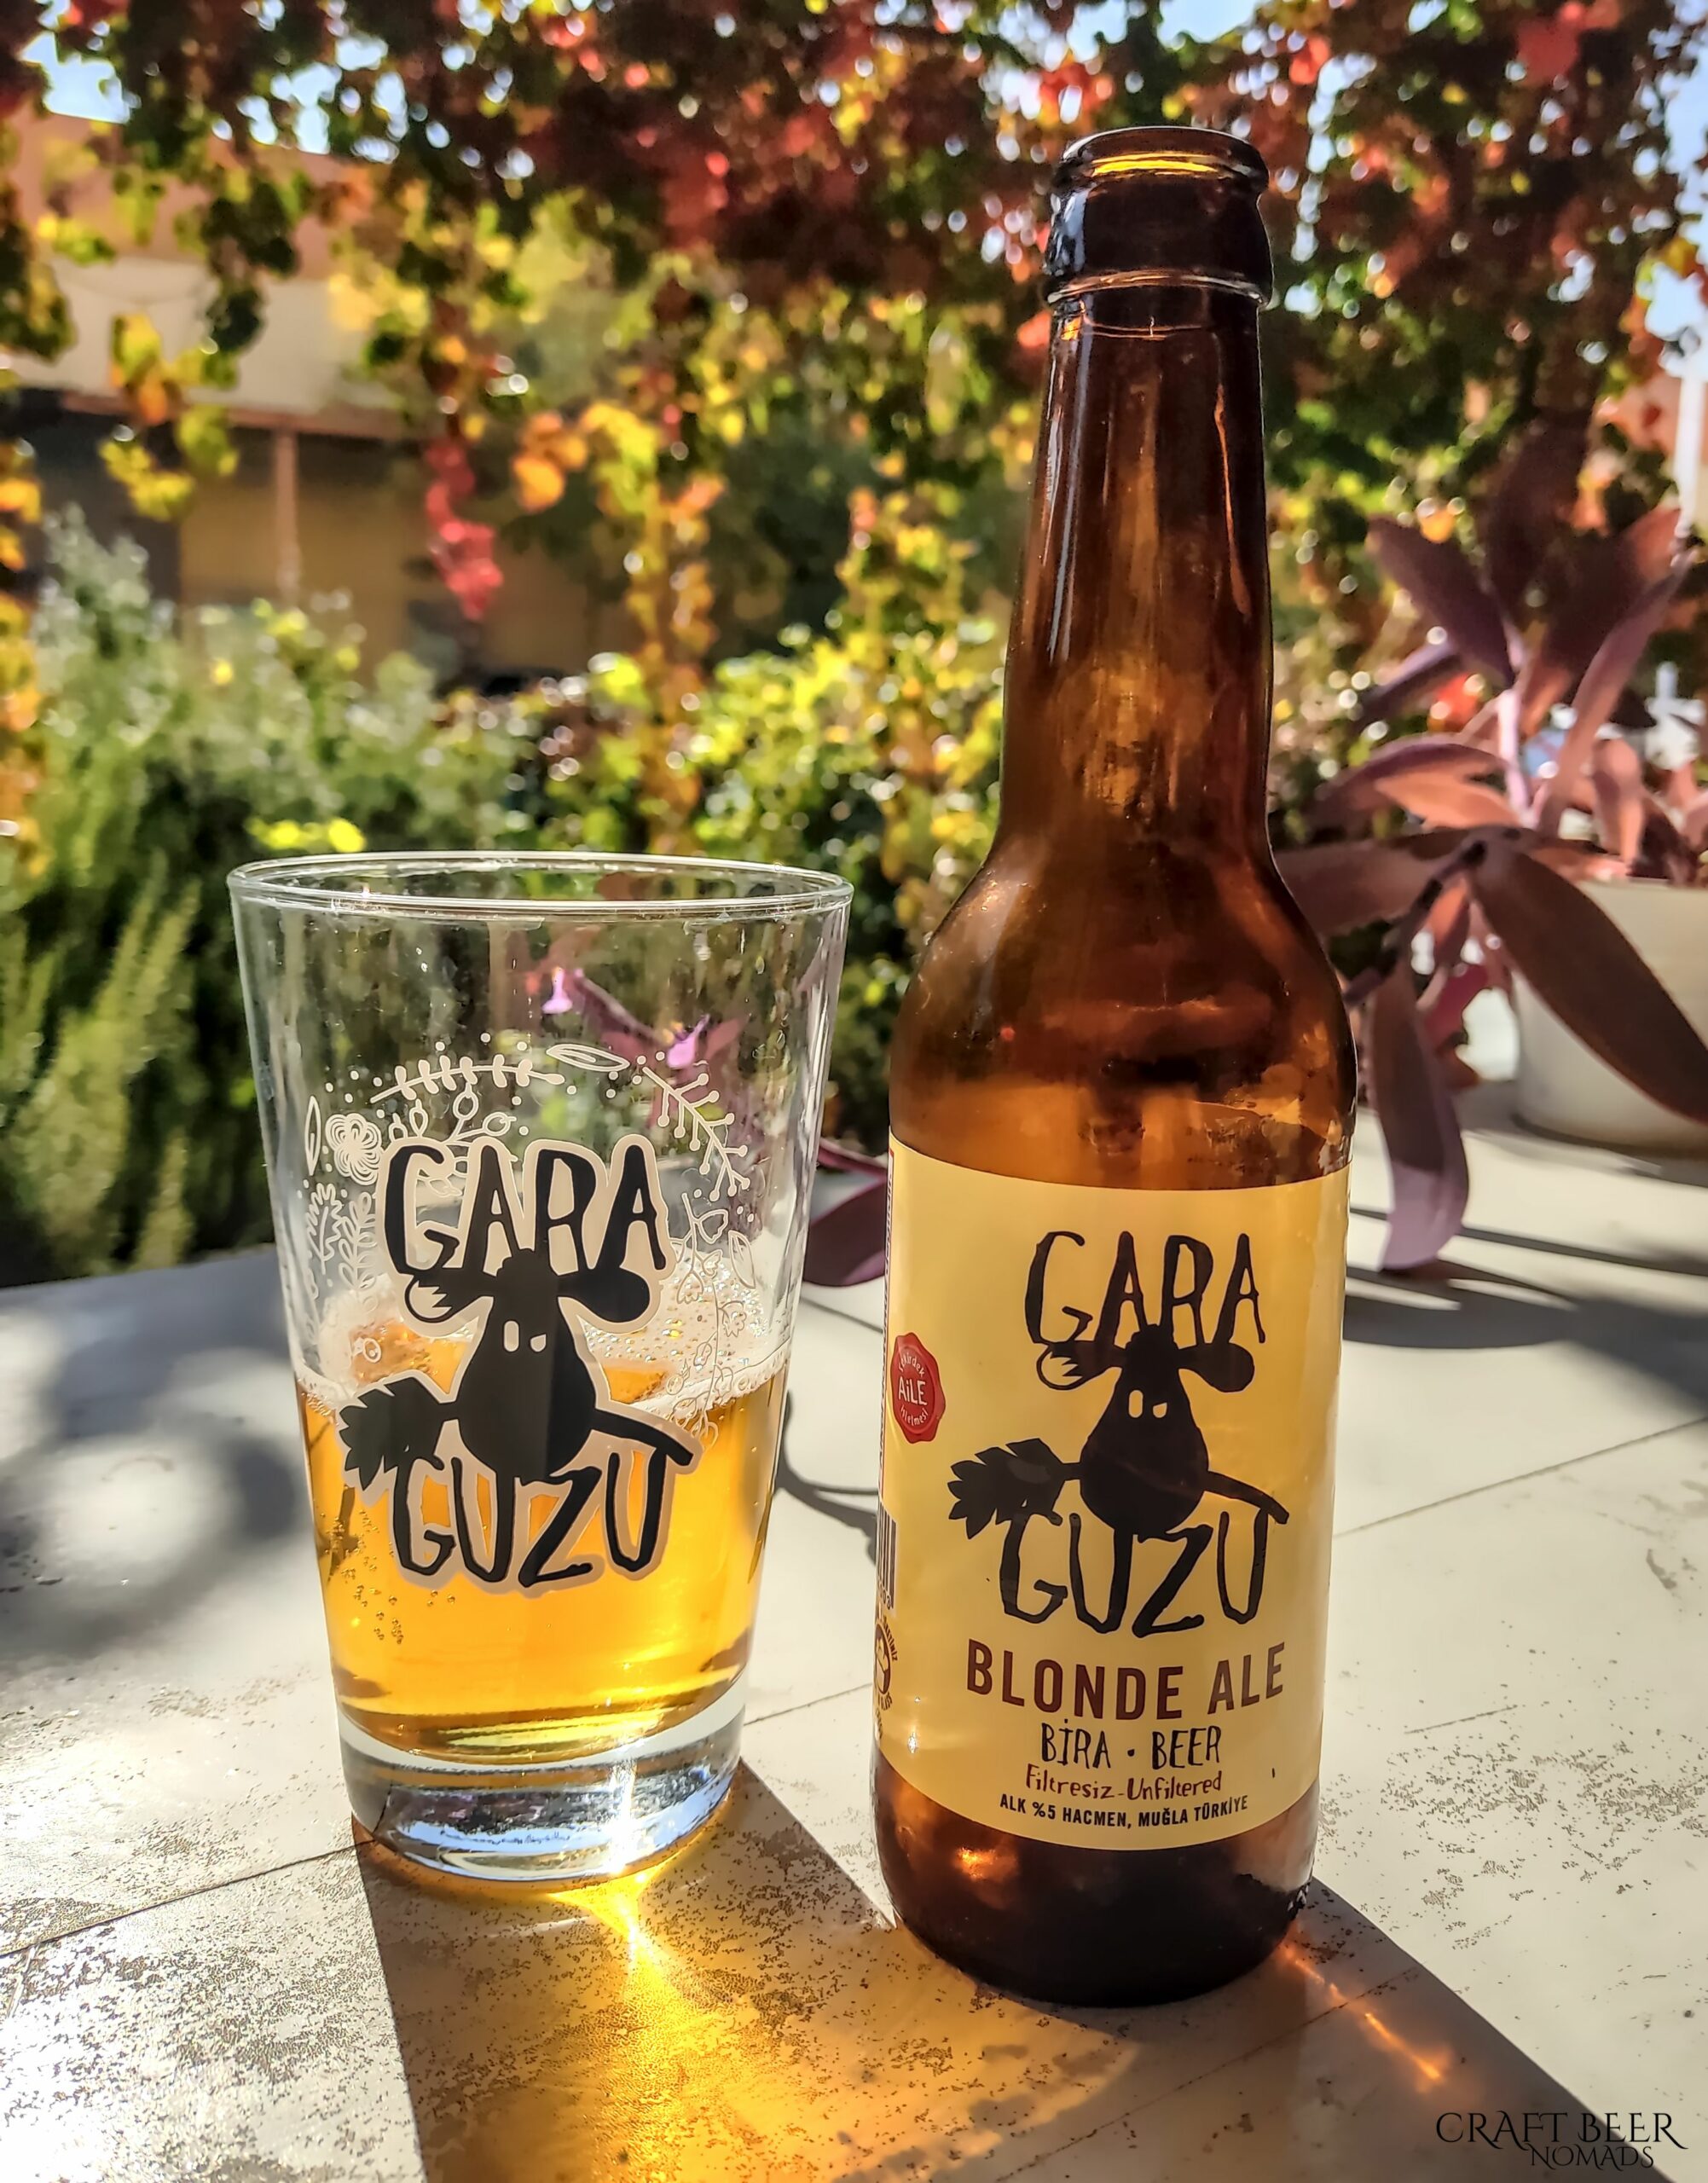 Blonde Ale from Gara Guzu brewery